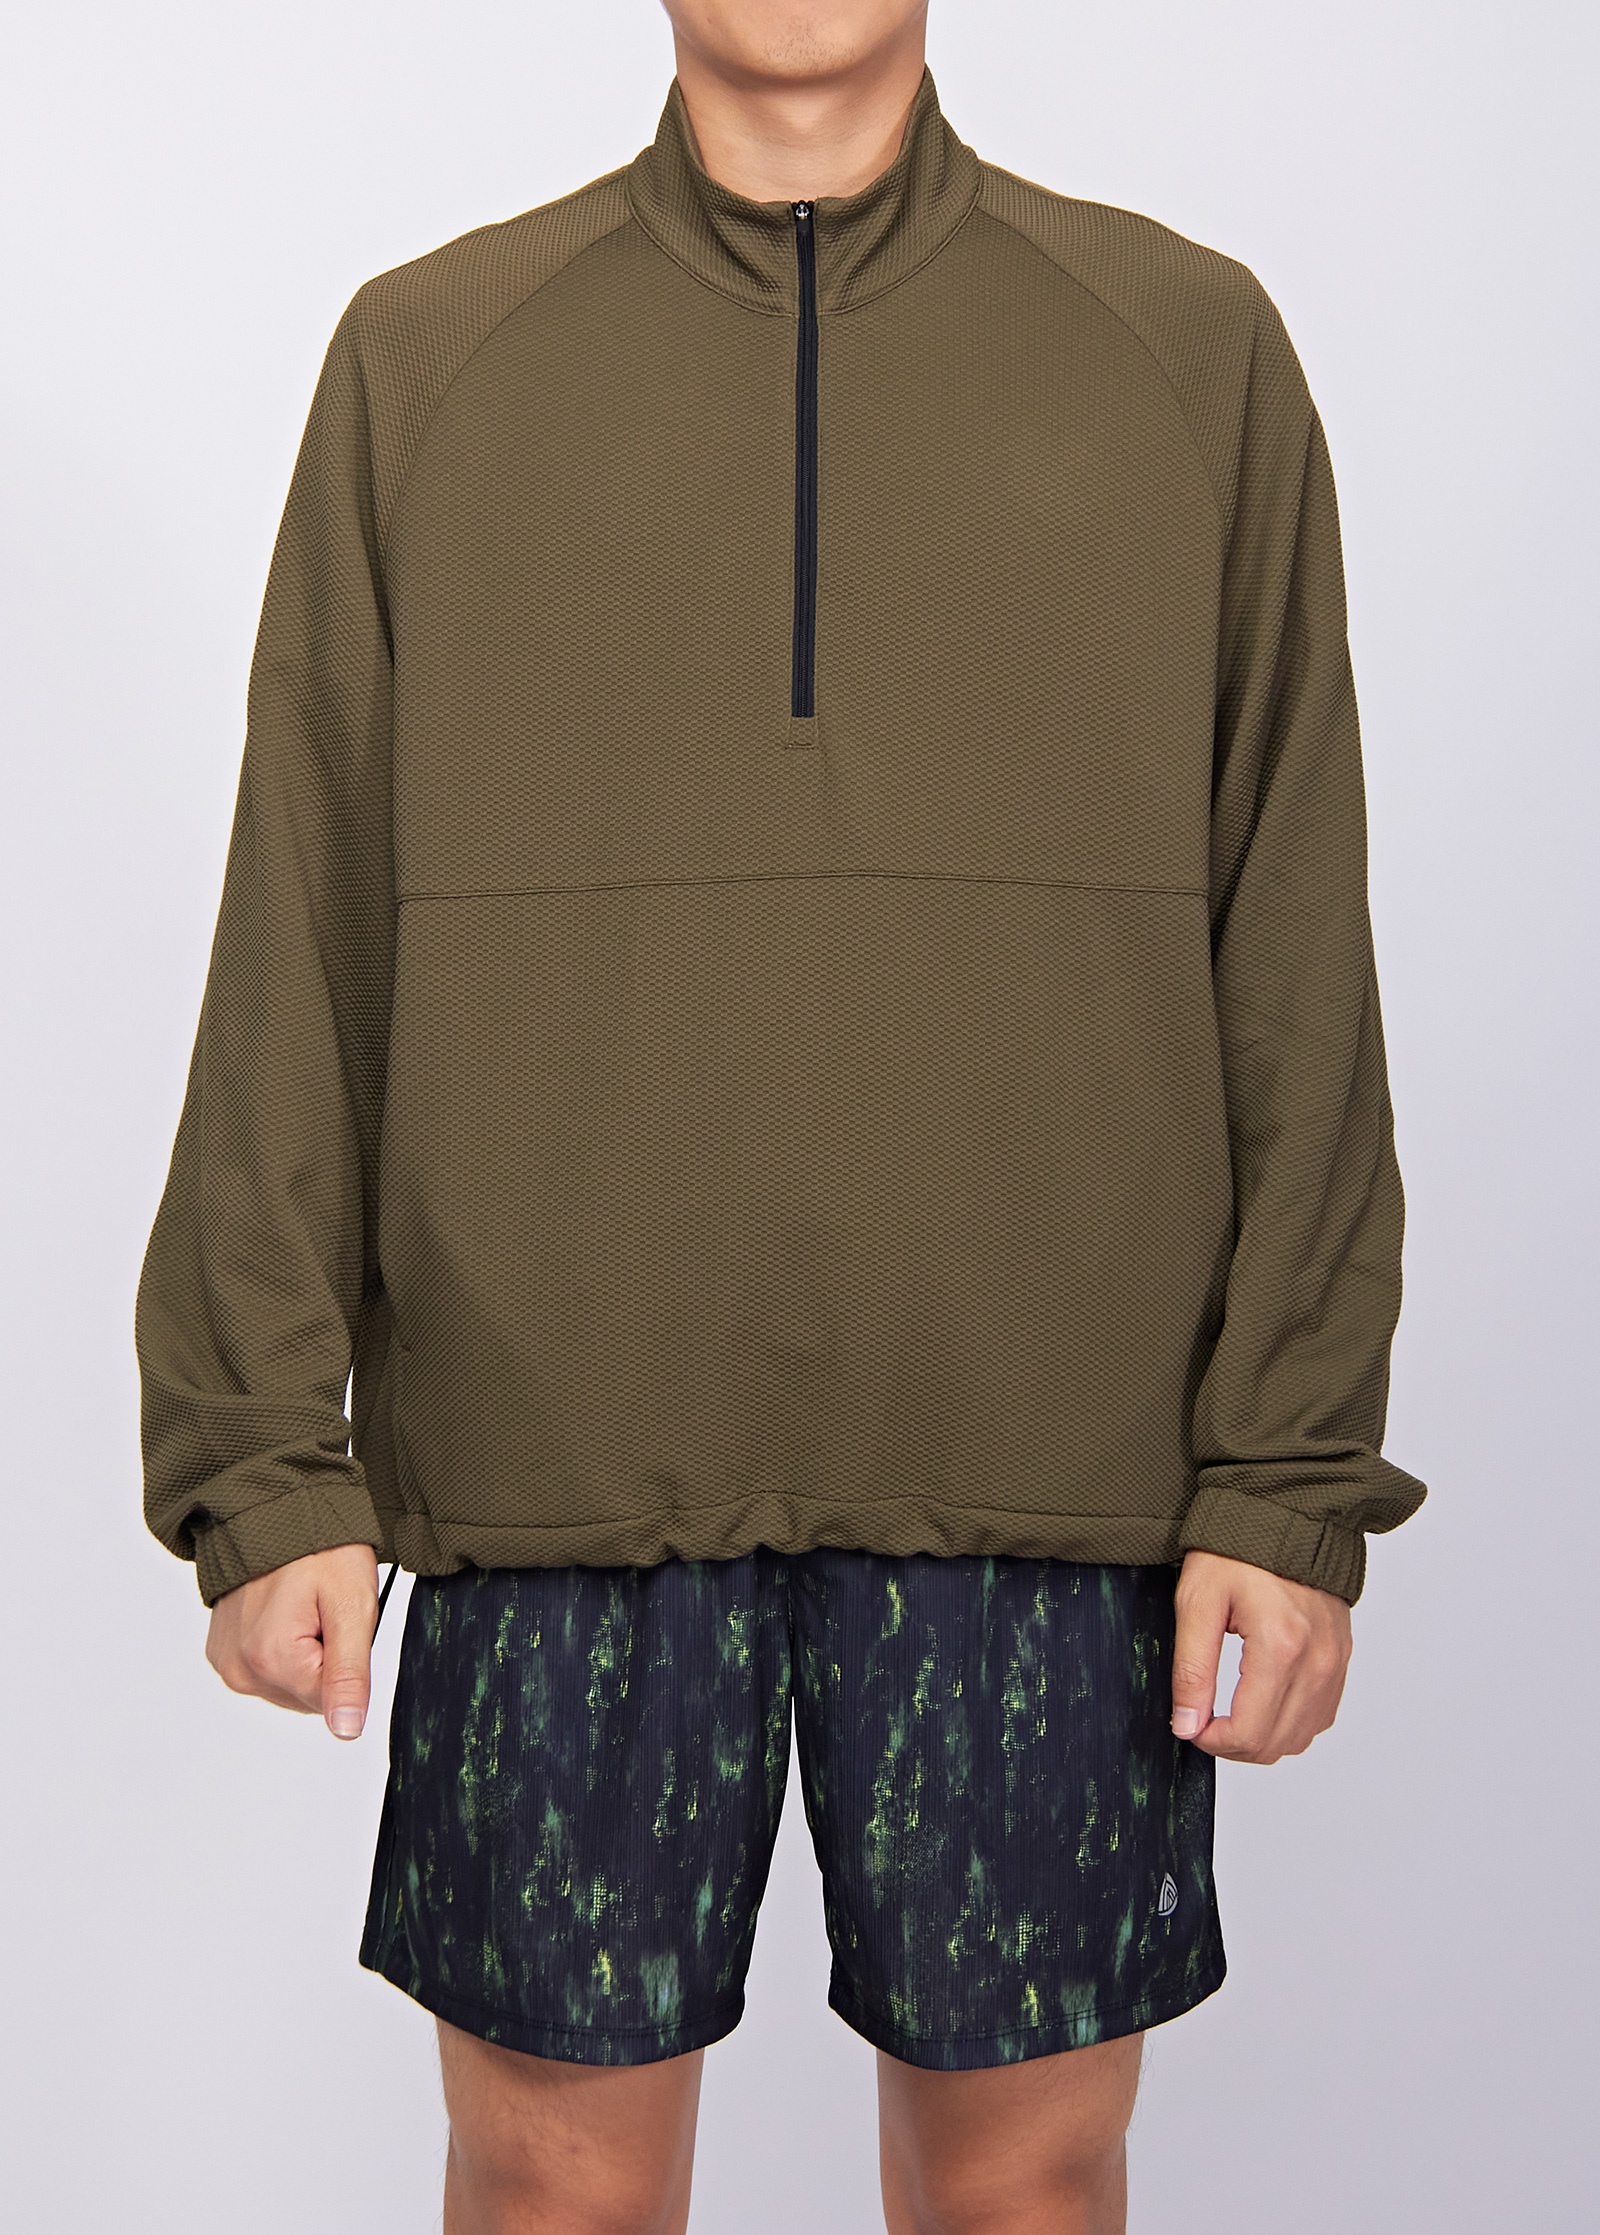 Men's 1/4 Zip Long Sleeve Fleece Lined Solid Color Workout Pullover Tops Sweatshirt OEM